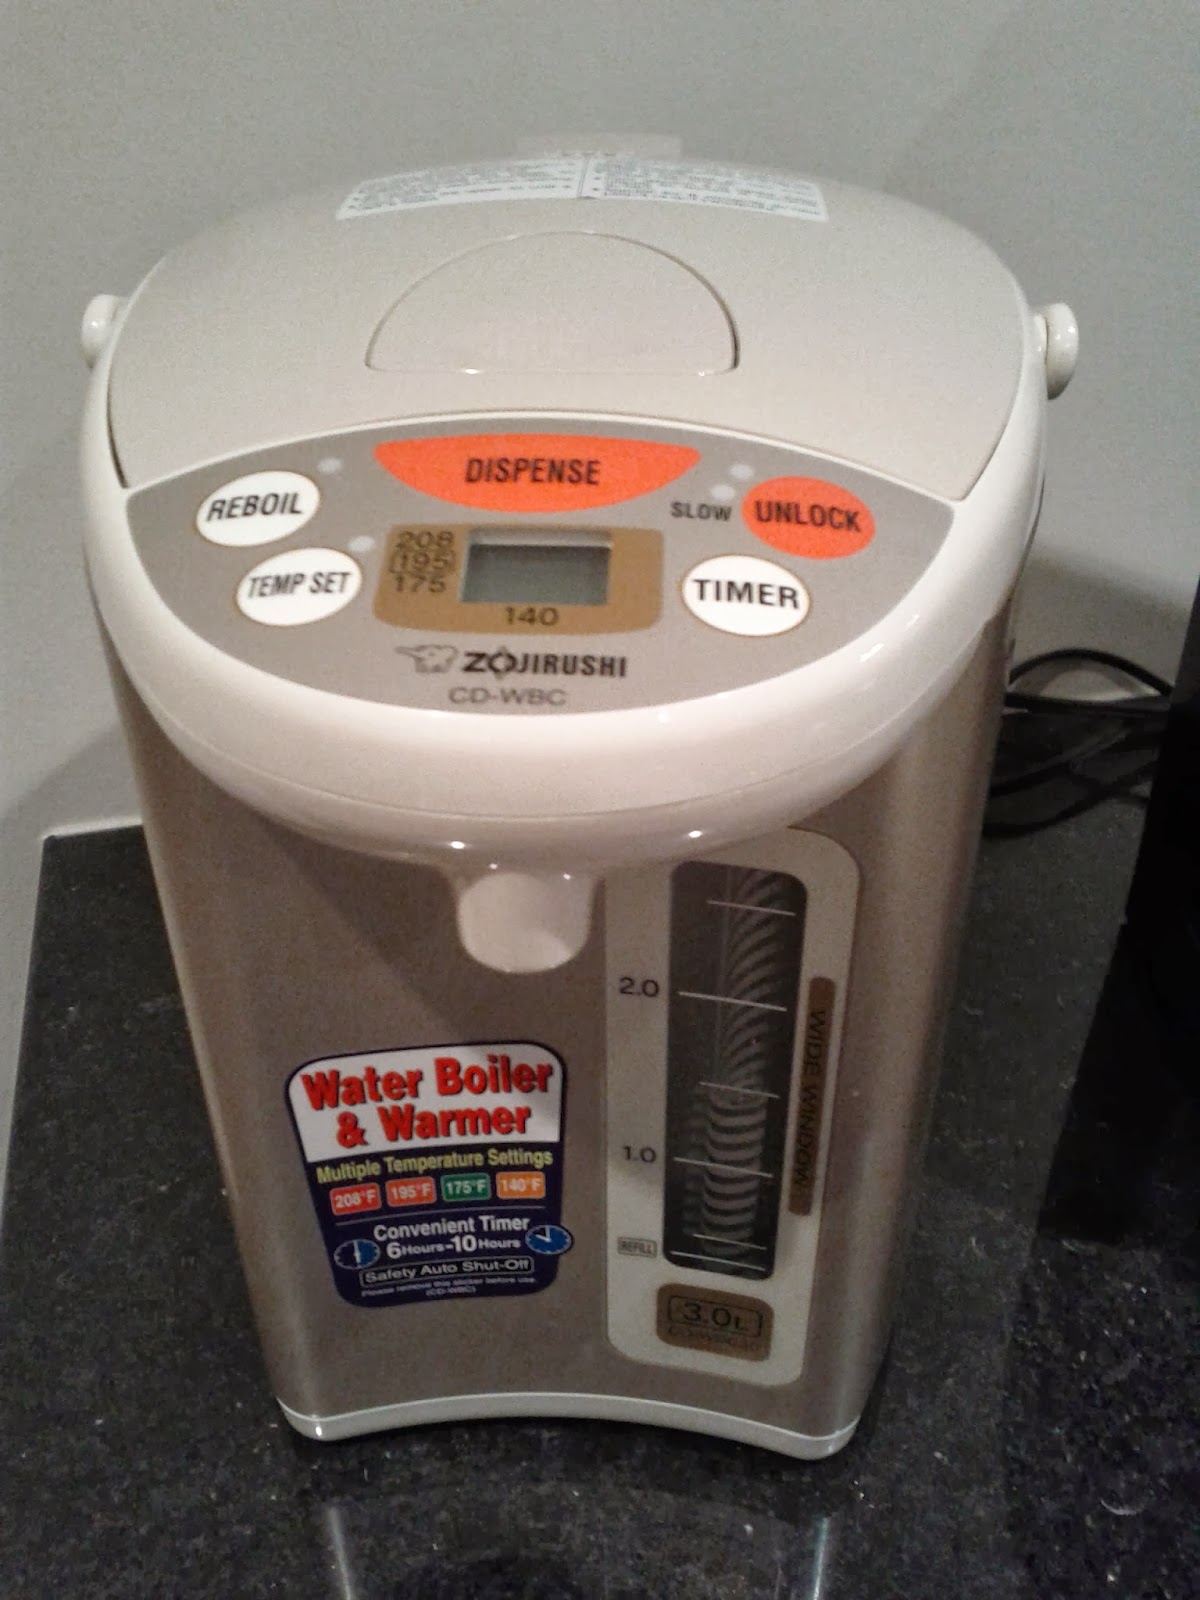 Zojirushi CD-WBC30 Water Boiler and Warmer Review